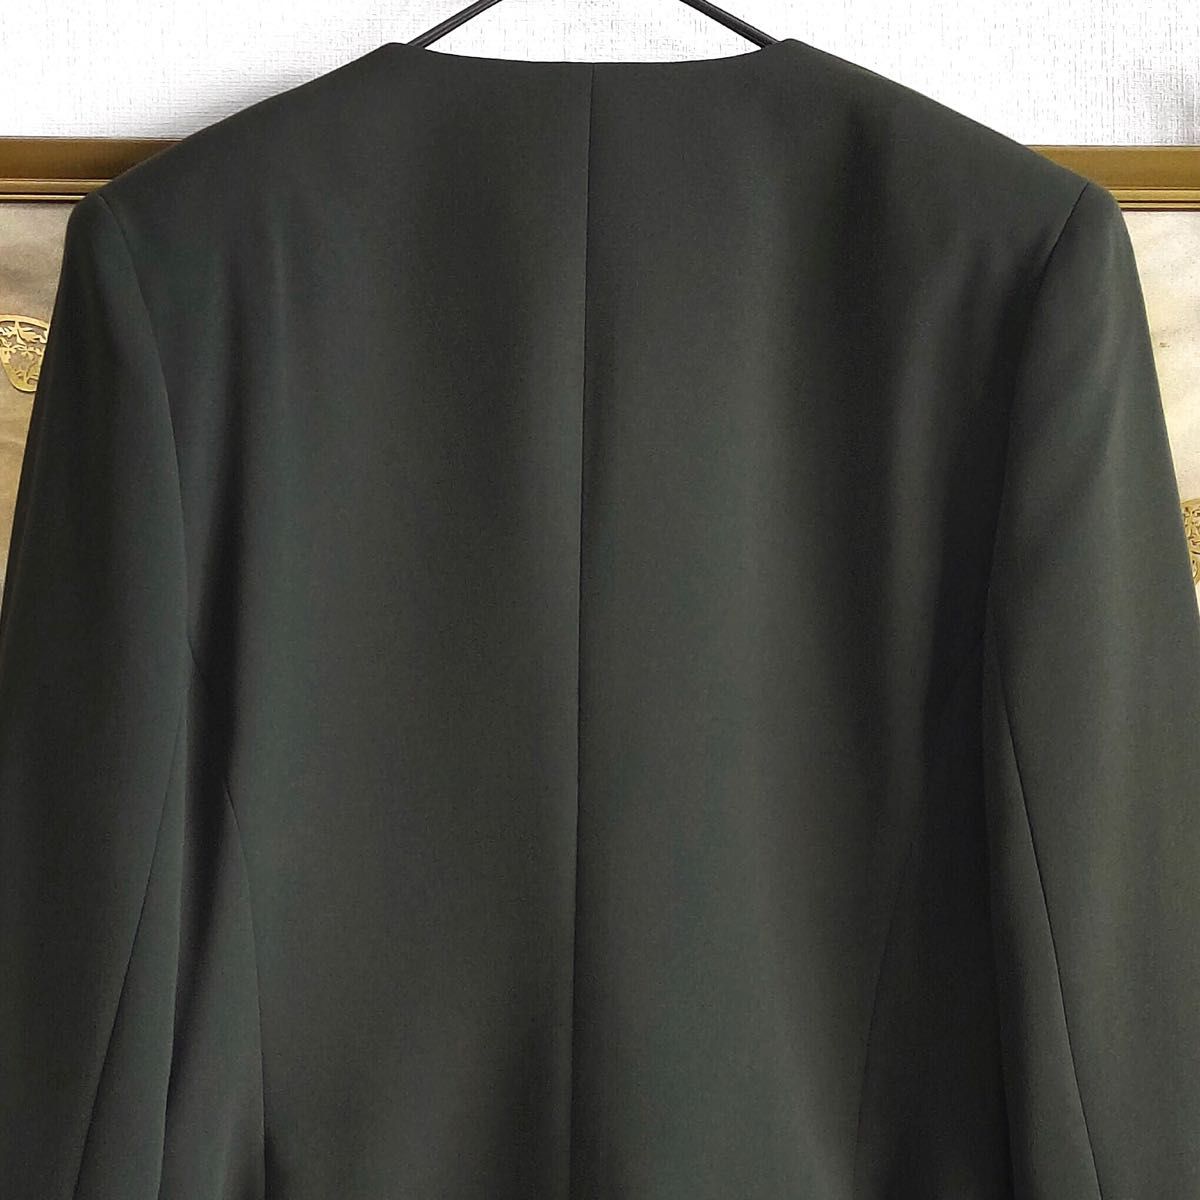 新品 ノーカラーコート ショートジャケット フォーマル スーツ 金釦 長袖 クラシック ゴールド カーキ グリーン 深緑色